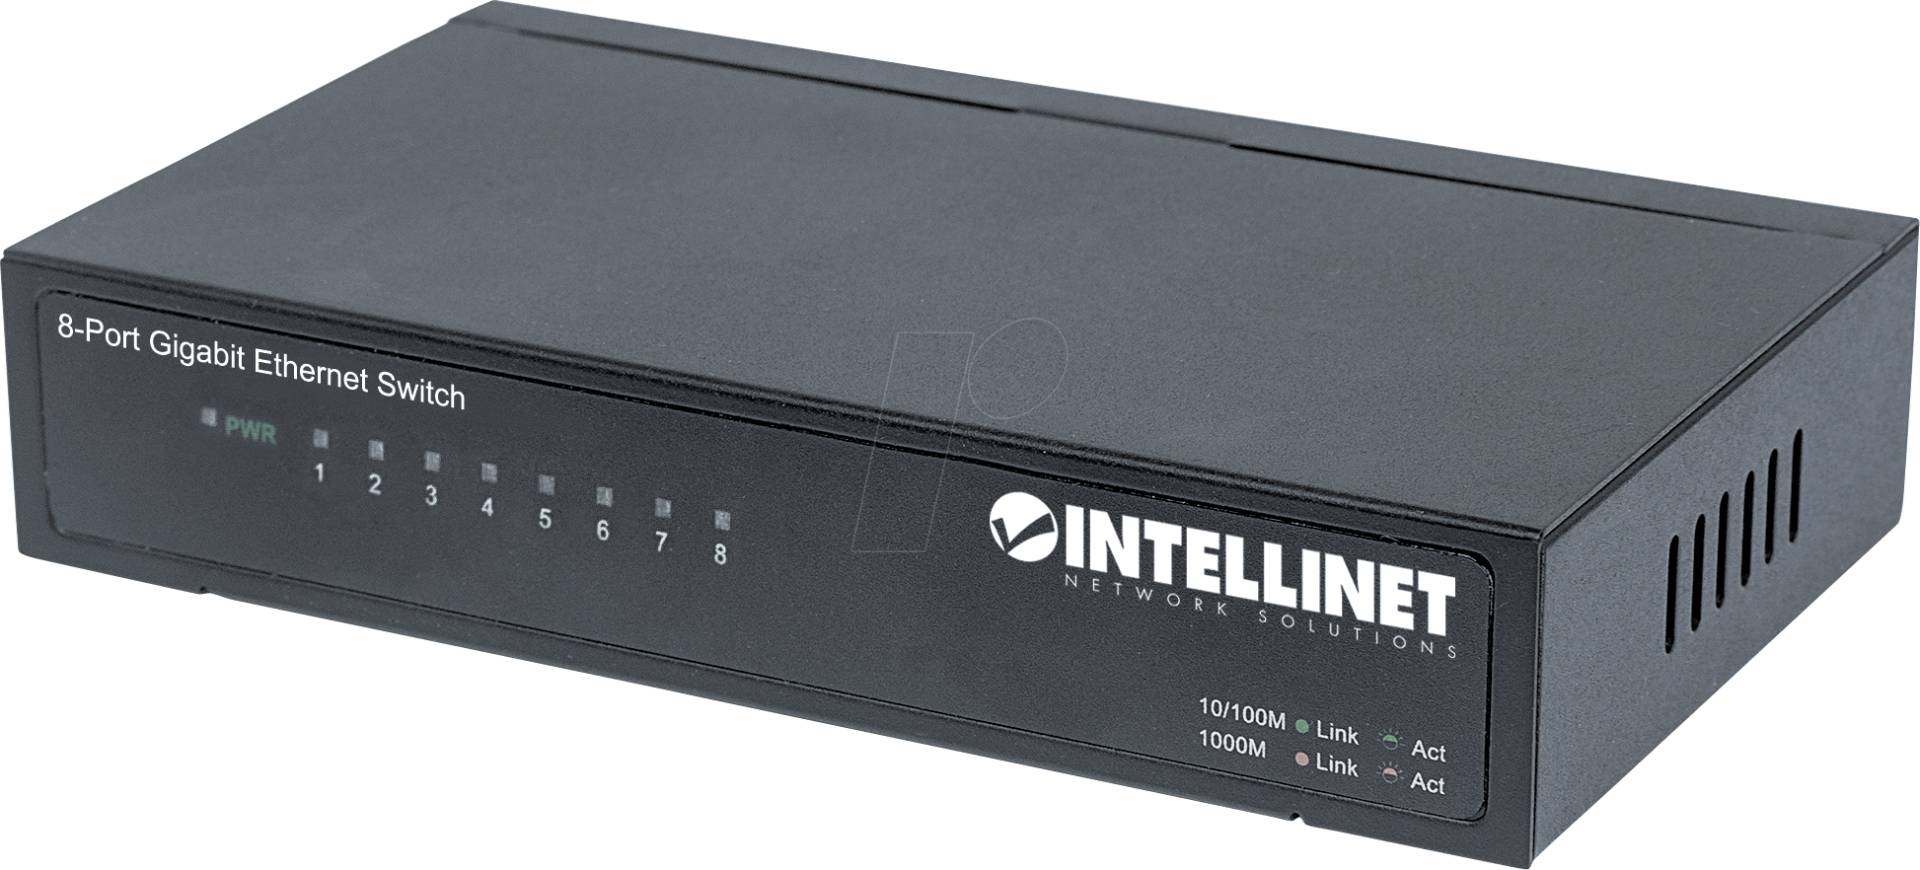 INT 530347 - Switch, 8-Port, Gigabit Ethernet von Intellinet